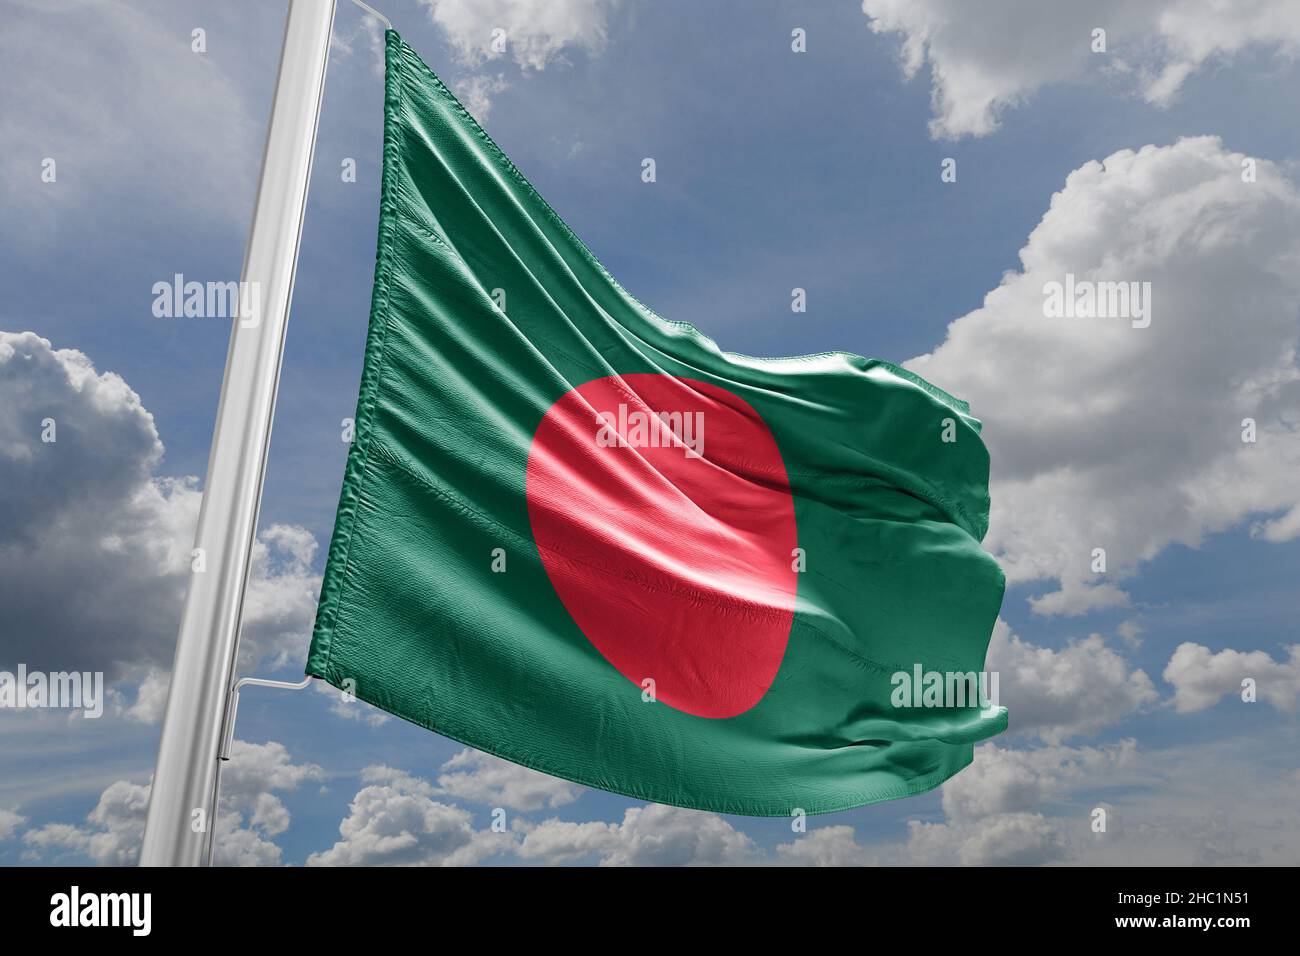 The national flag of Bangladesh Stock Photo